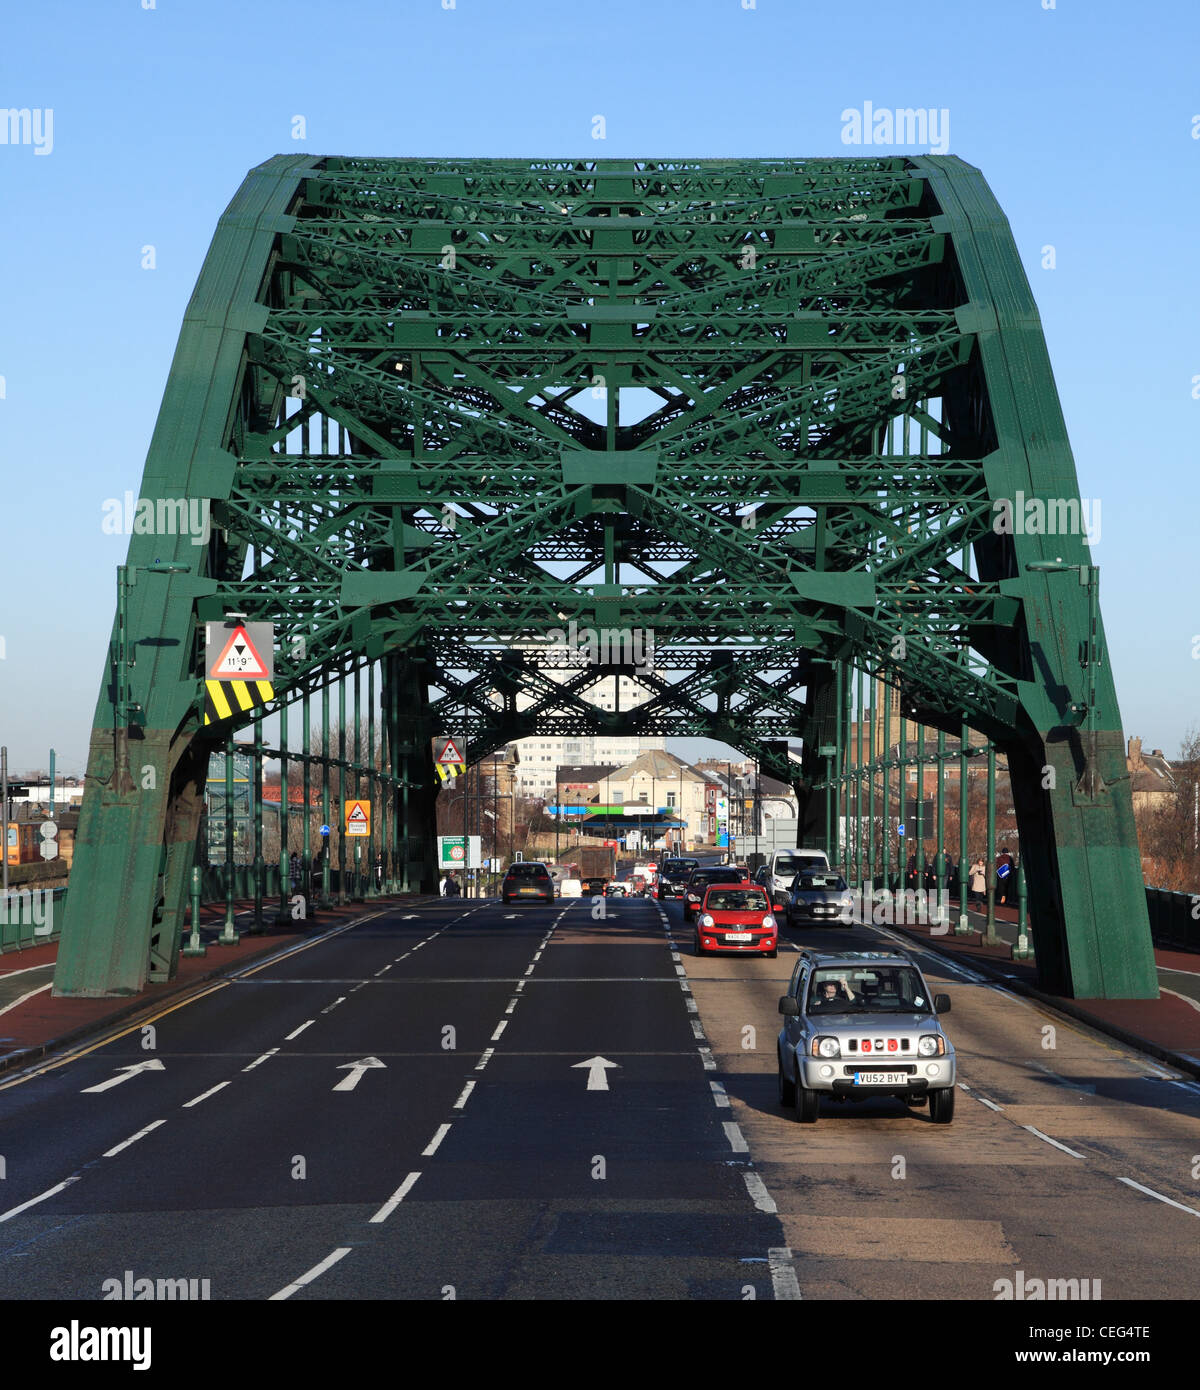 El tráfico que cruza el puente de carretera Wearmouth Sunderland del noreste de Inglaterra Foto de stock